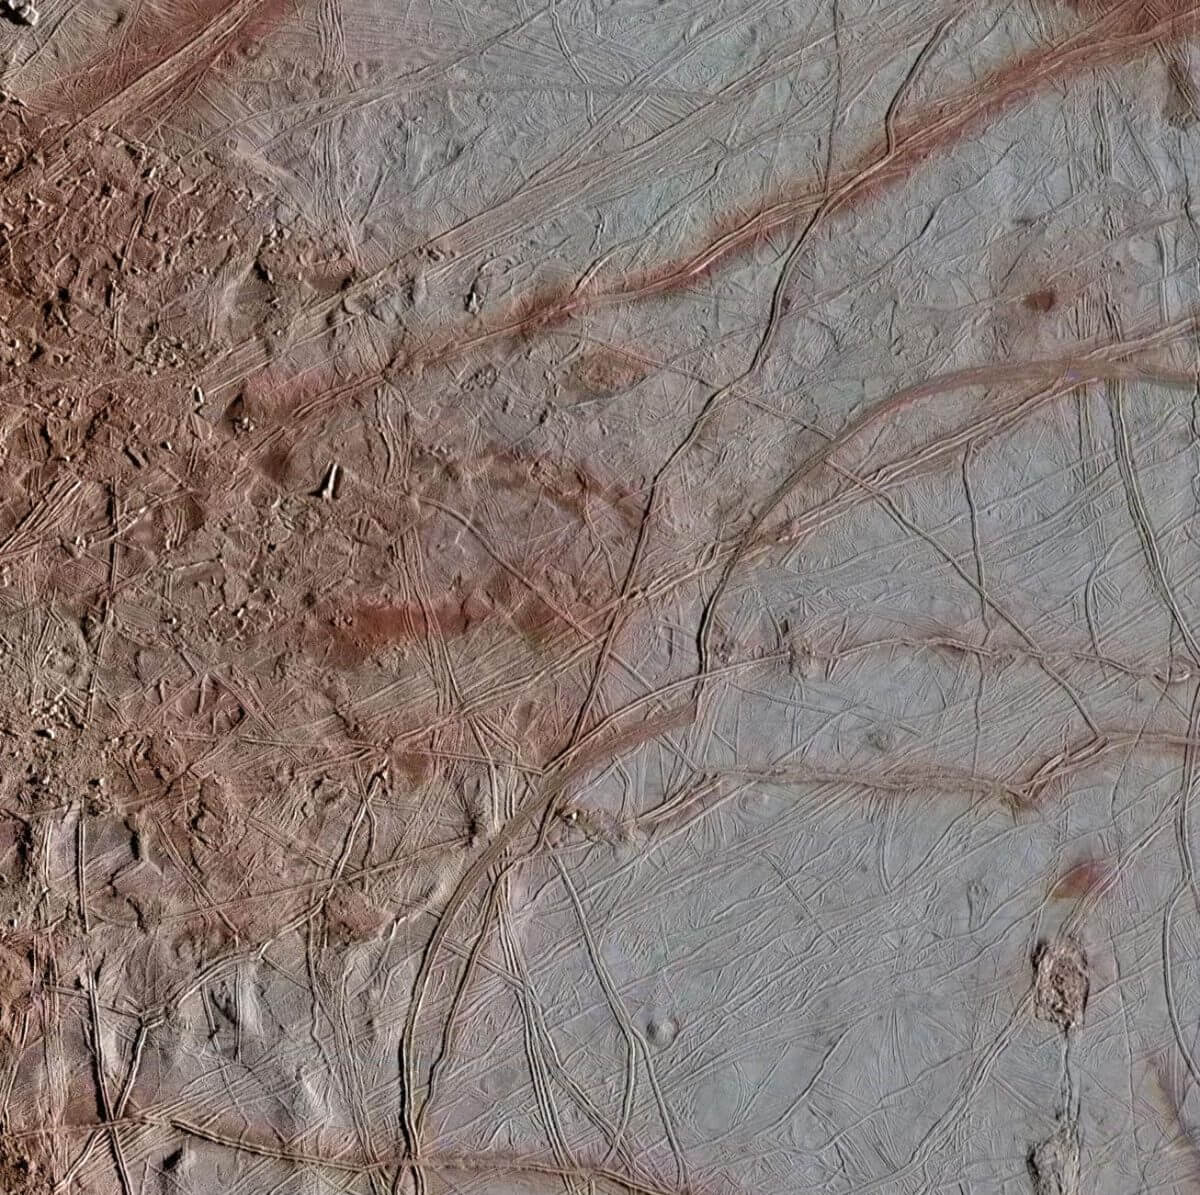 木星探査機「ガリレオ」が撮影したエウロパの表面。左側にカオス地形が広がっている（Credit: NASA/JPL-Caltech/SETI Institute）